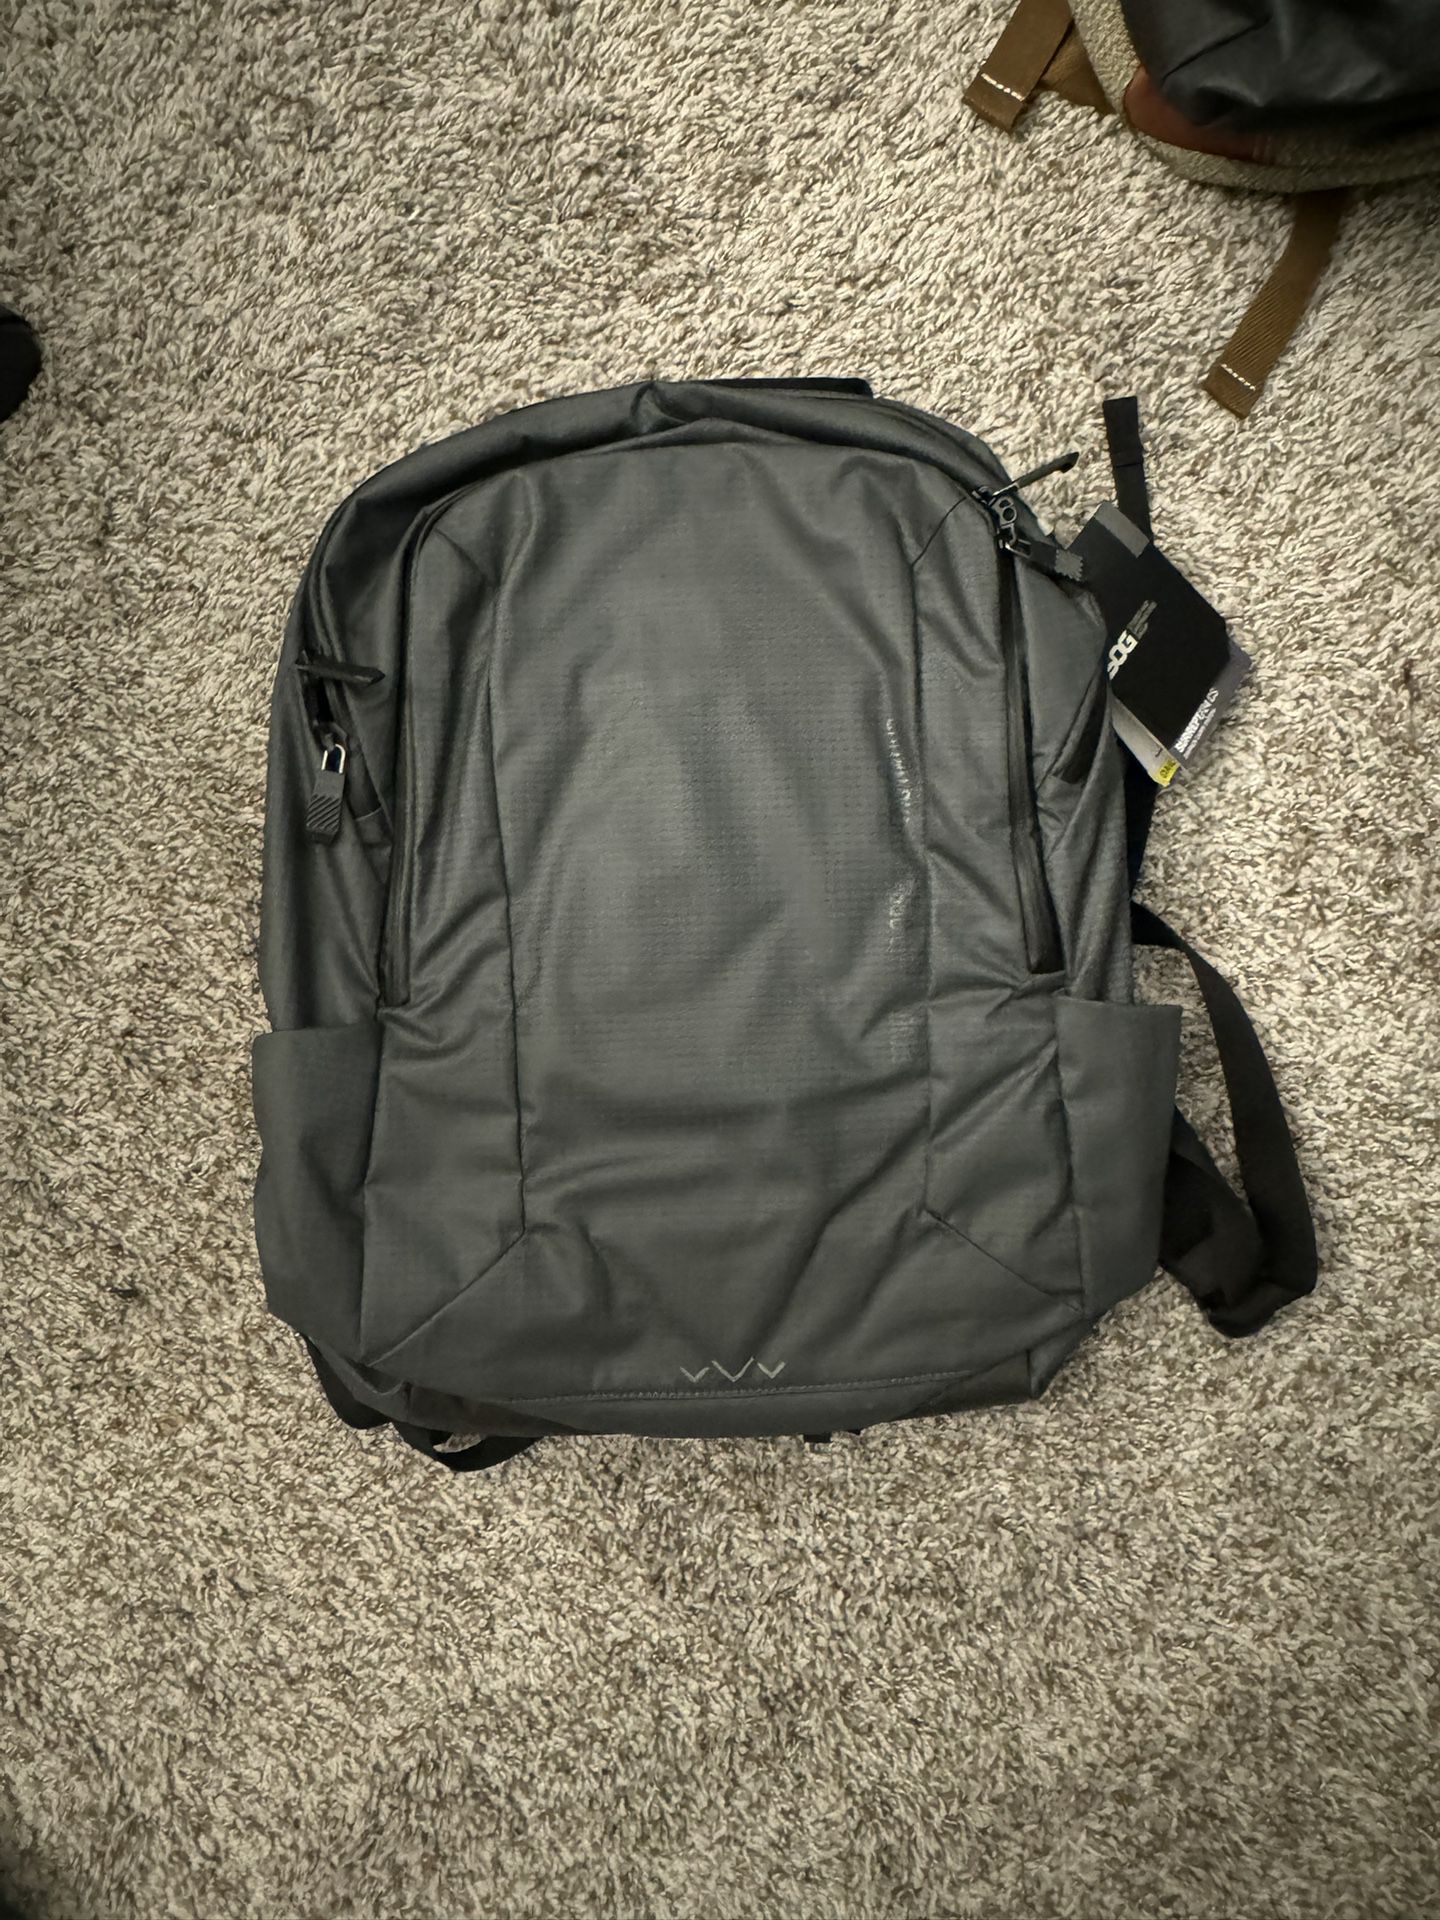 SOG Surrept/24 CS Daypack Carry System